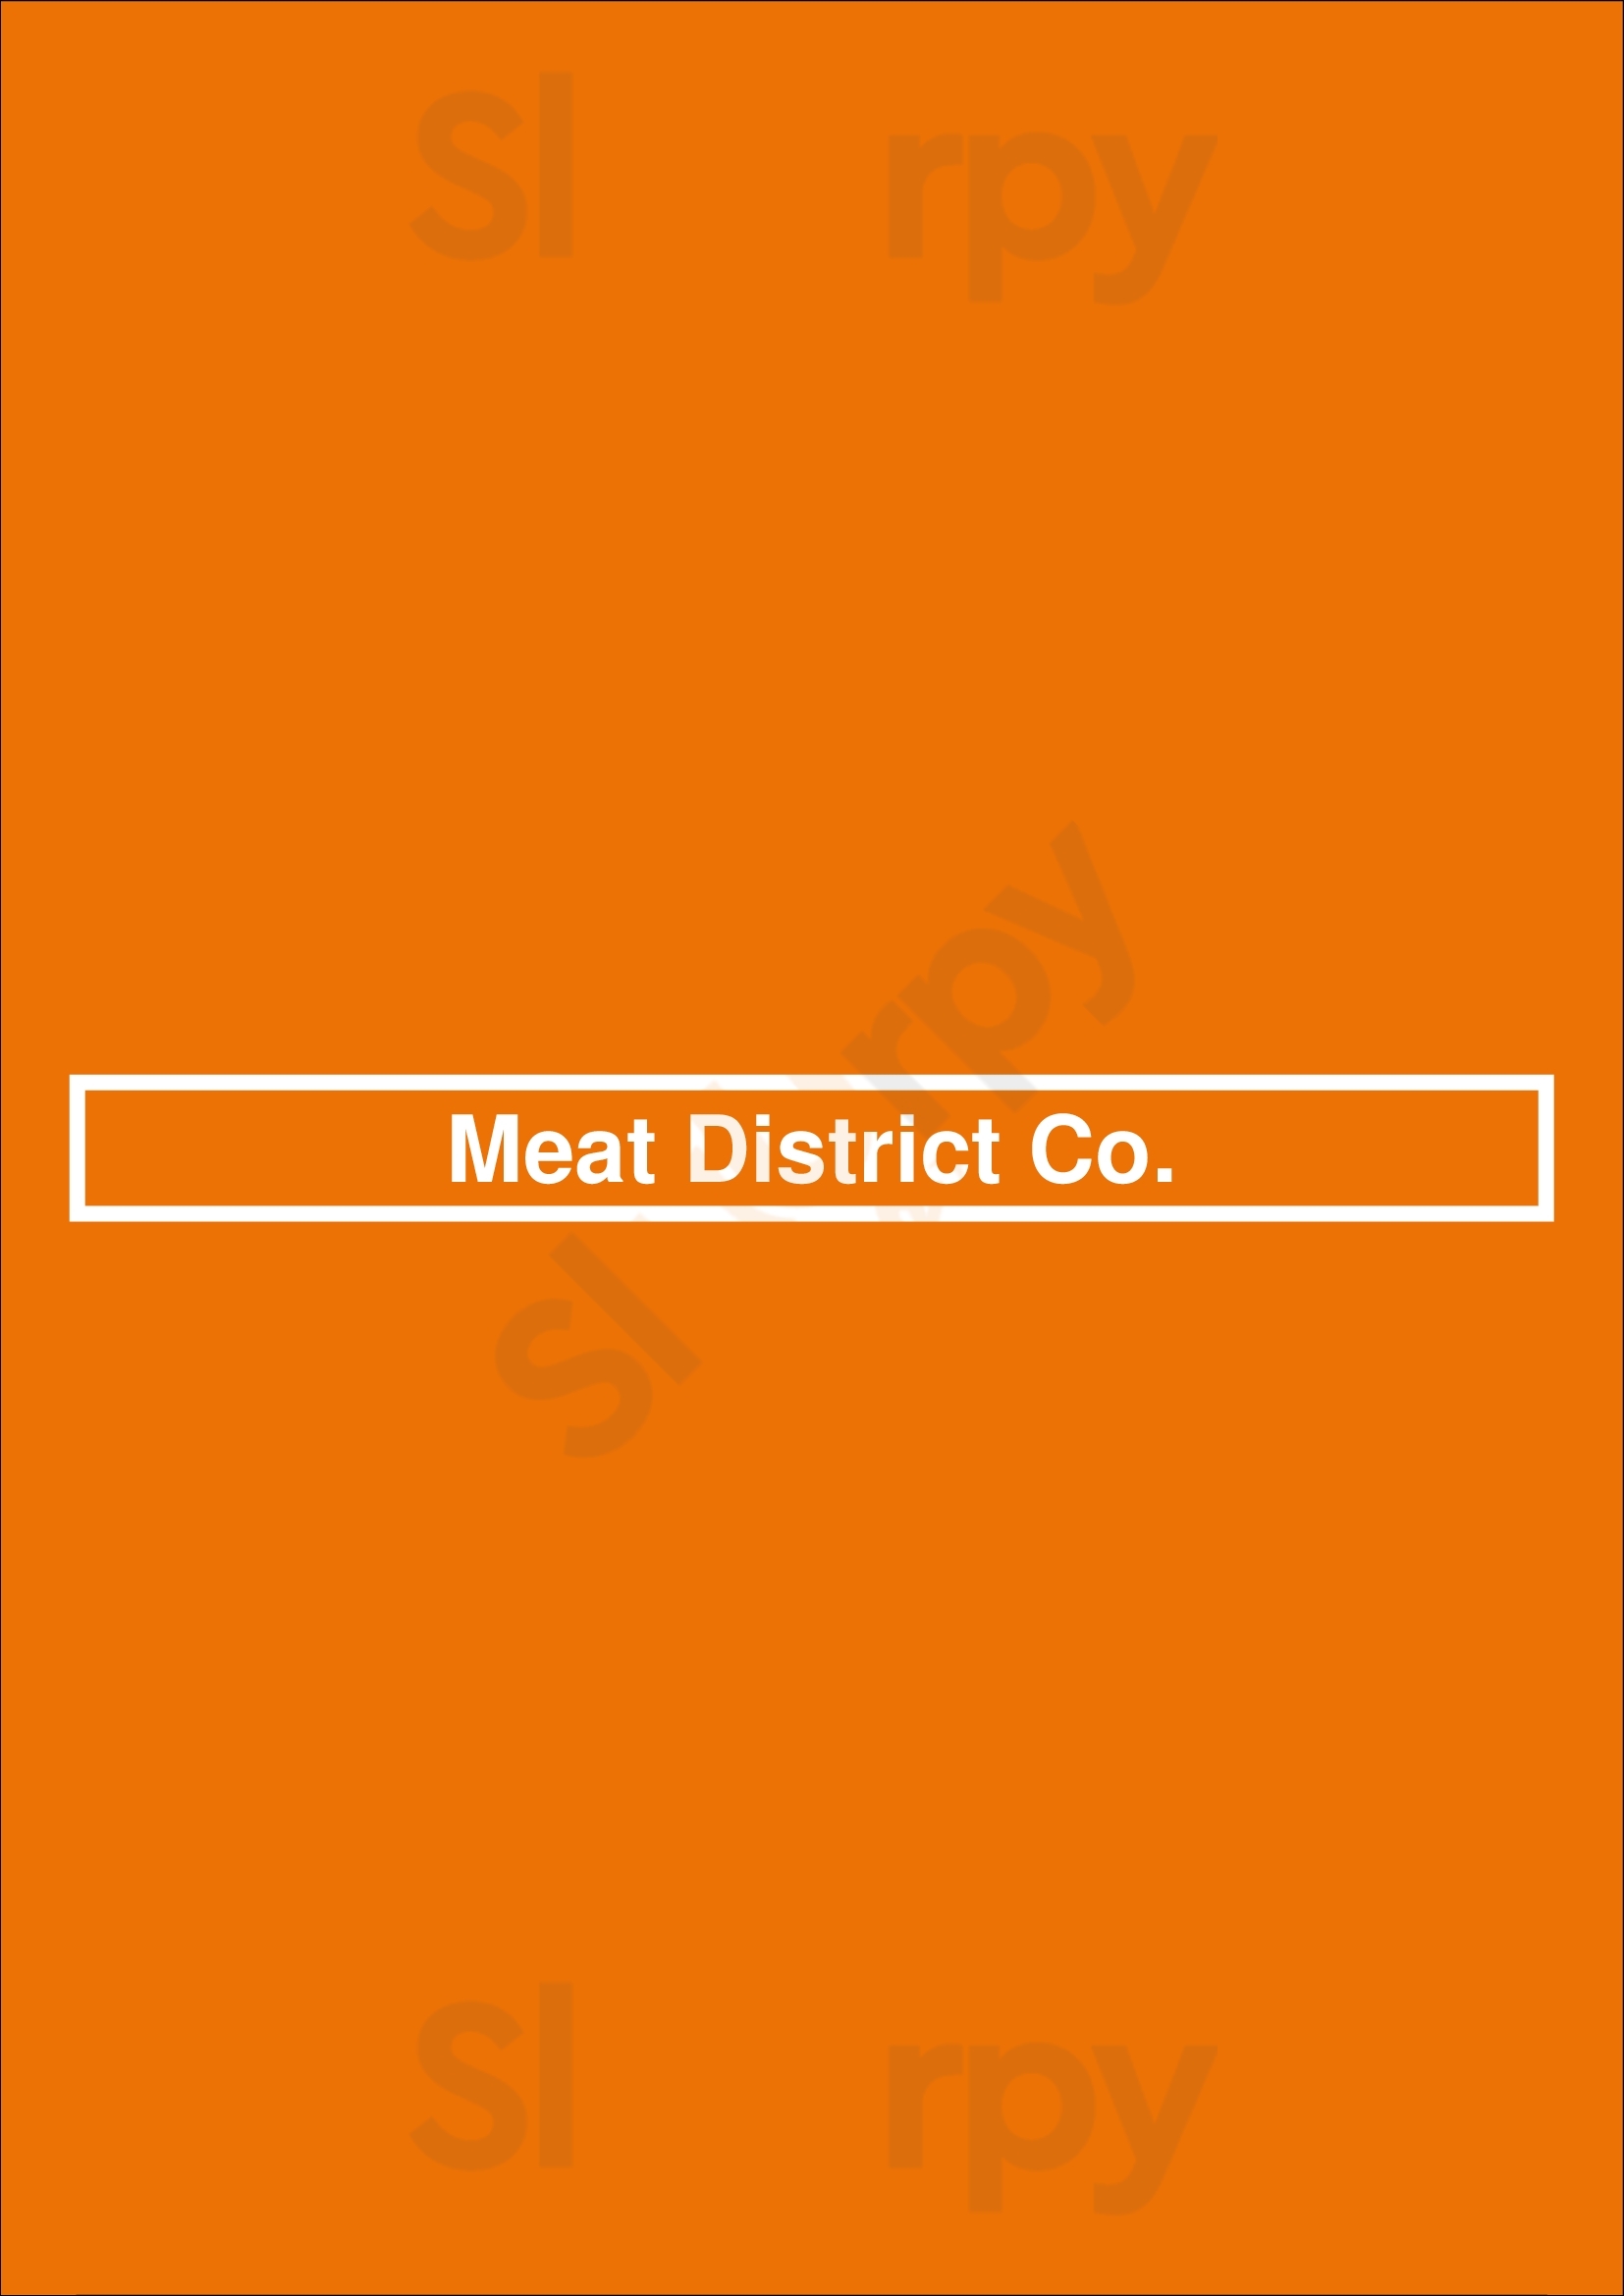 Meat District Co. Sydney Menu - 1